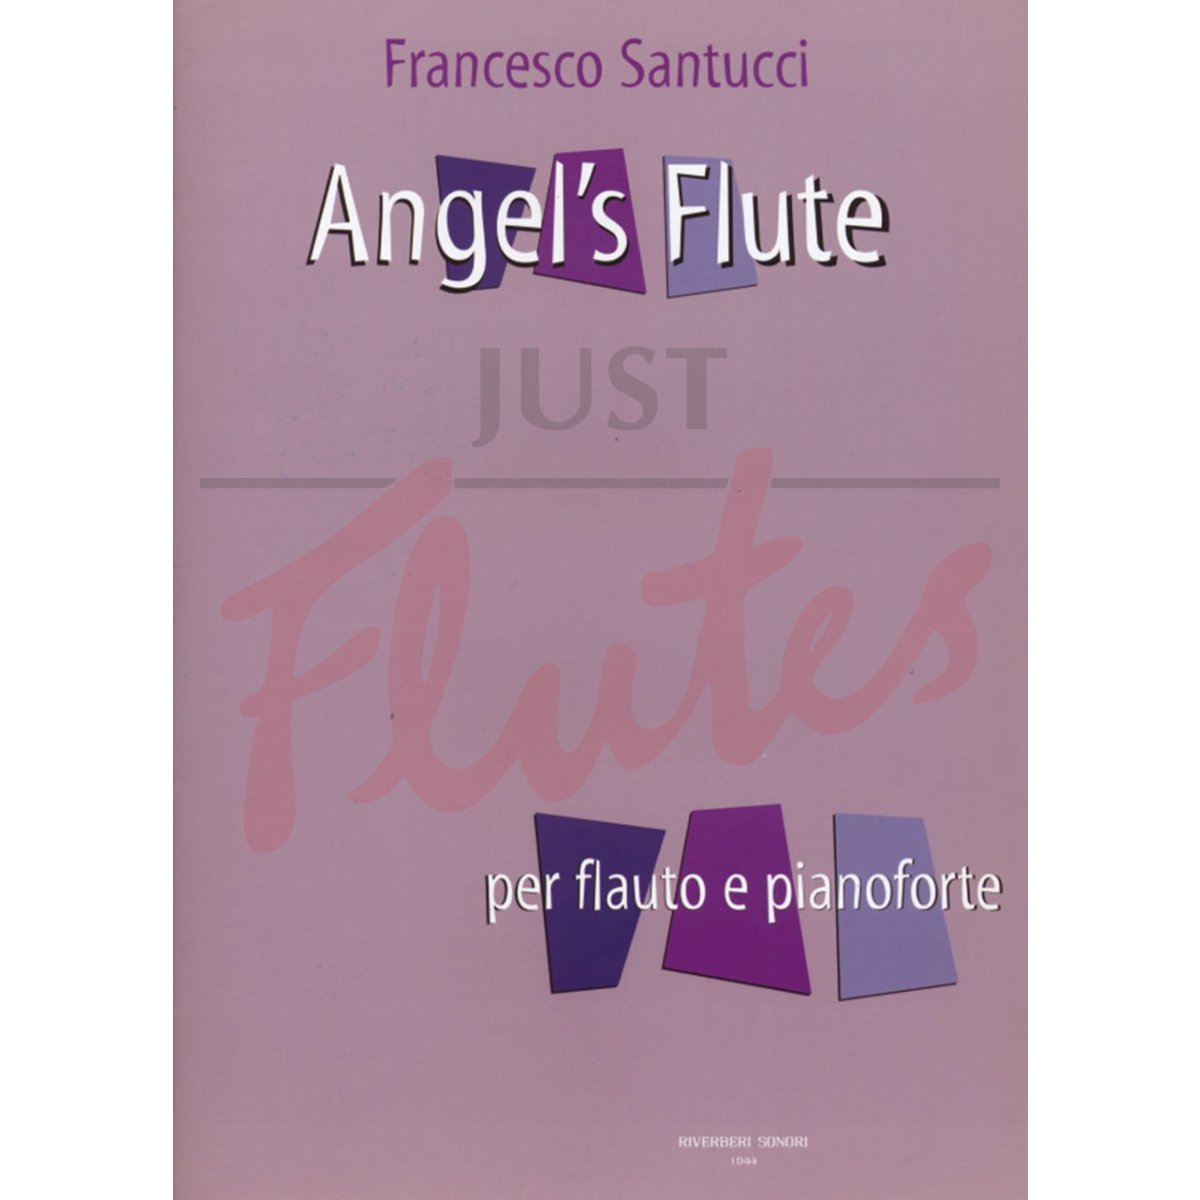 Angel's Flute